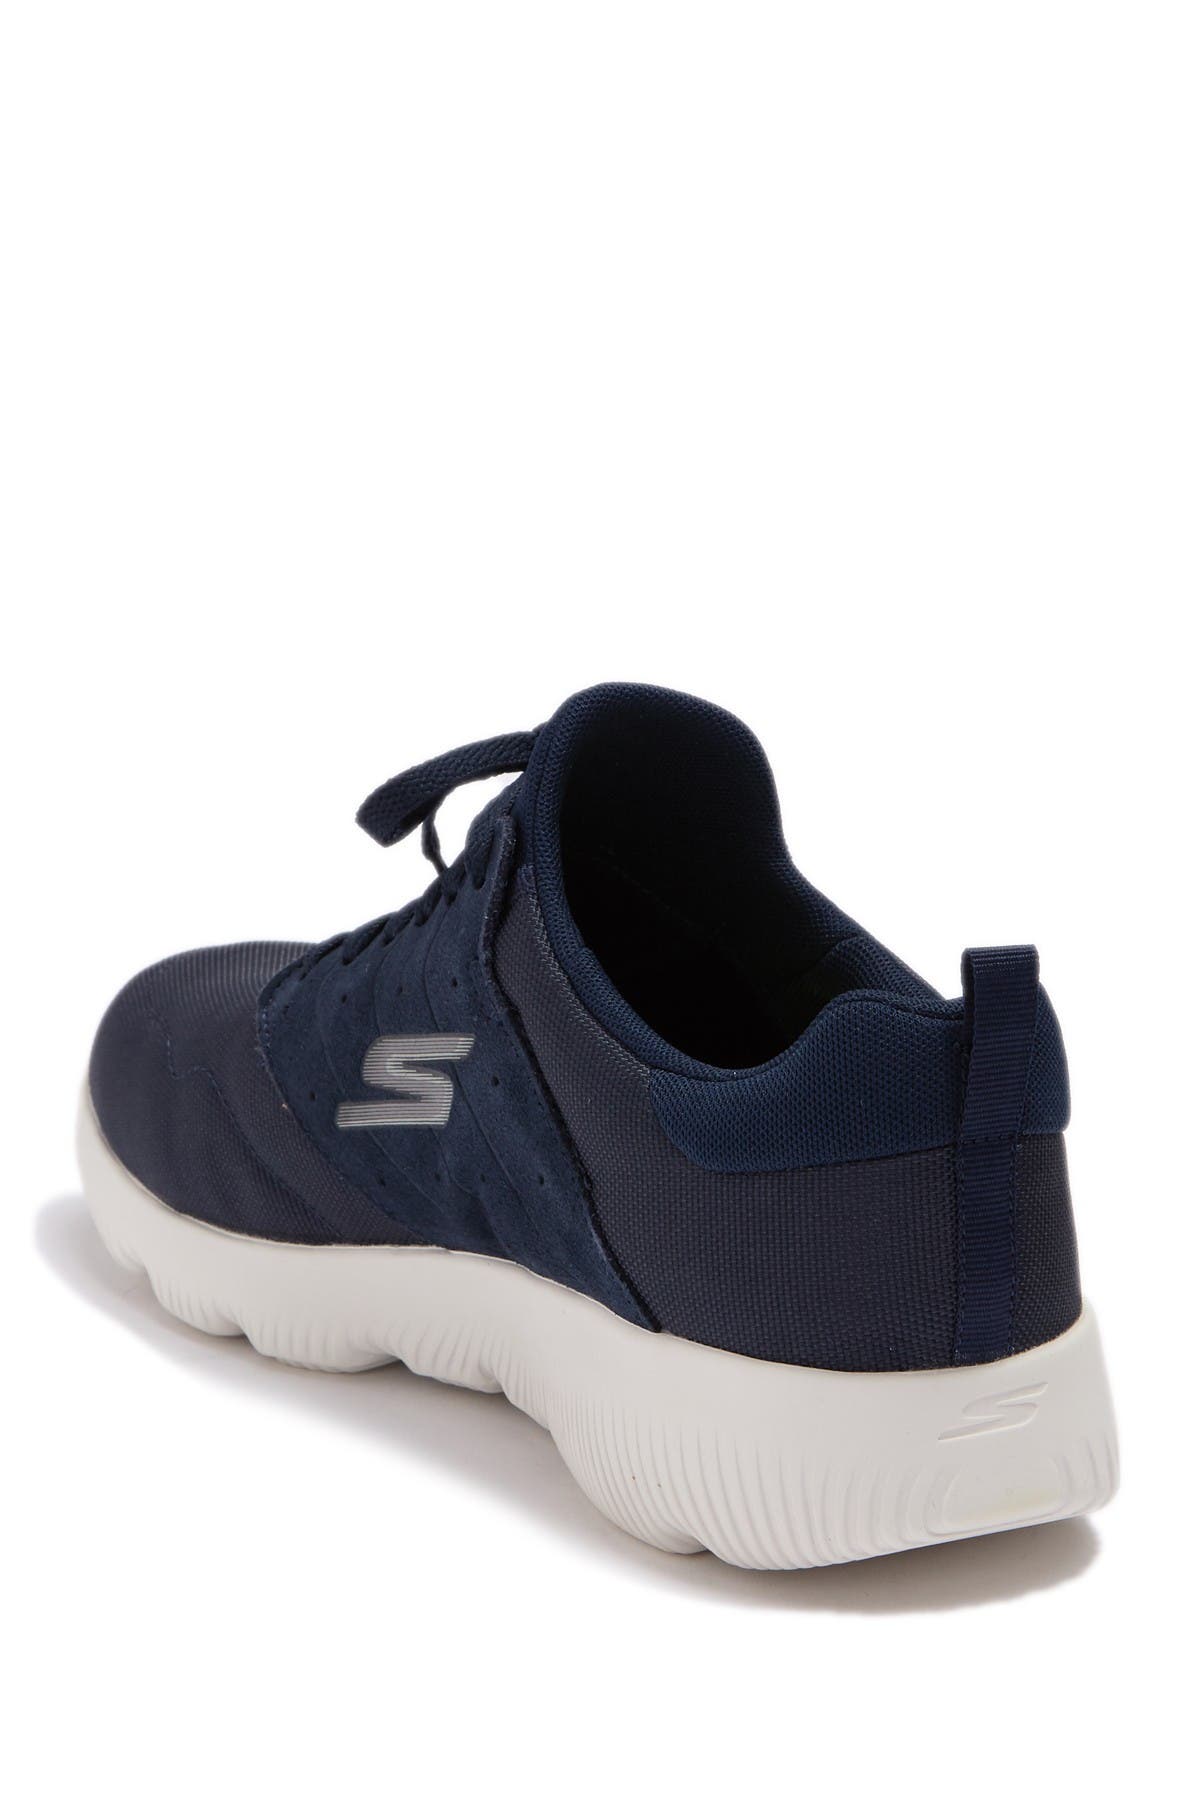 Skechers | Go Run Focus Argos Sneaker 